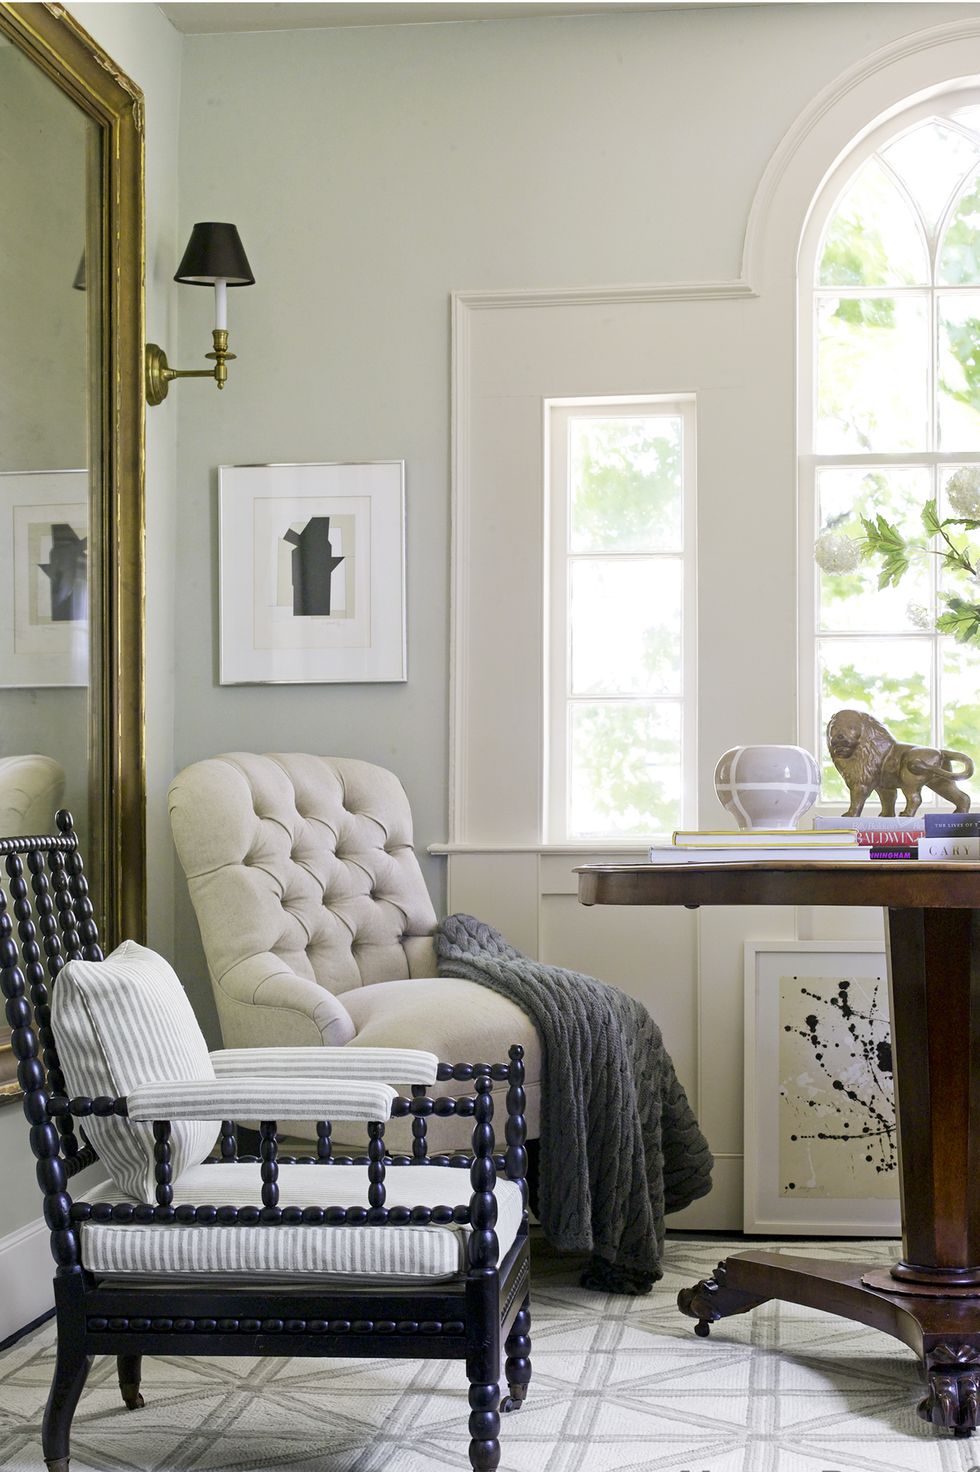 hình ảnh góc thư giãn bên cửa sổ kính lớn với ghế bành, sơn tường màu xanh xám, chăn màu rêu